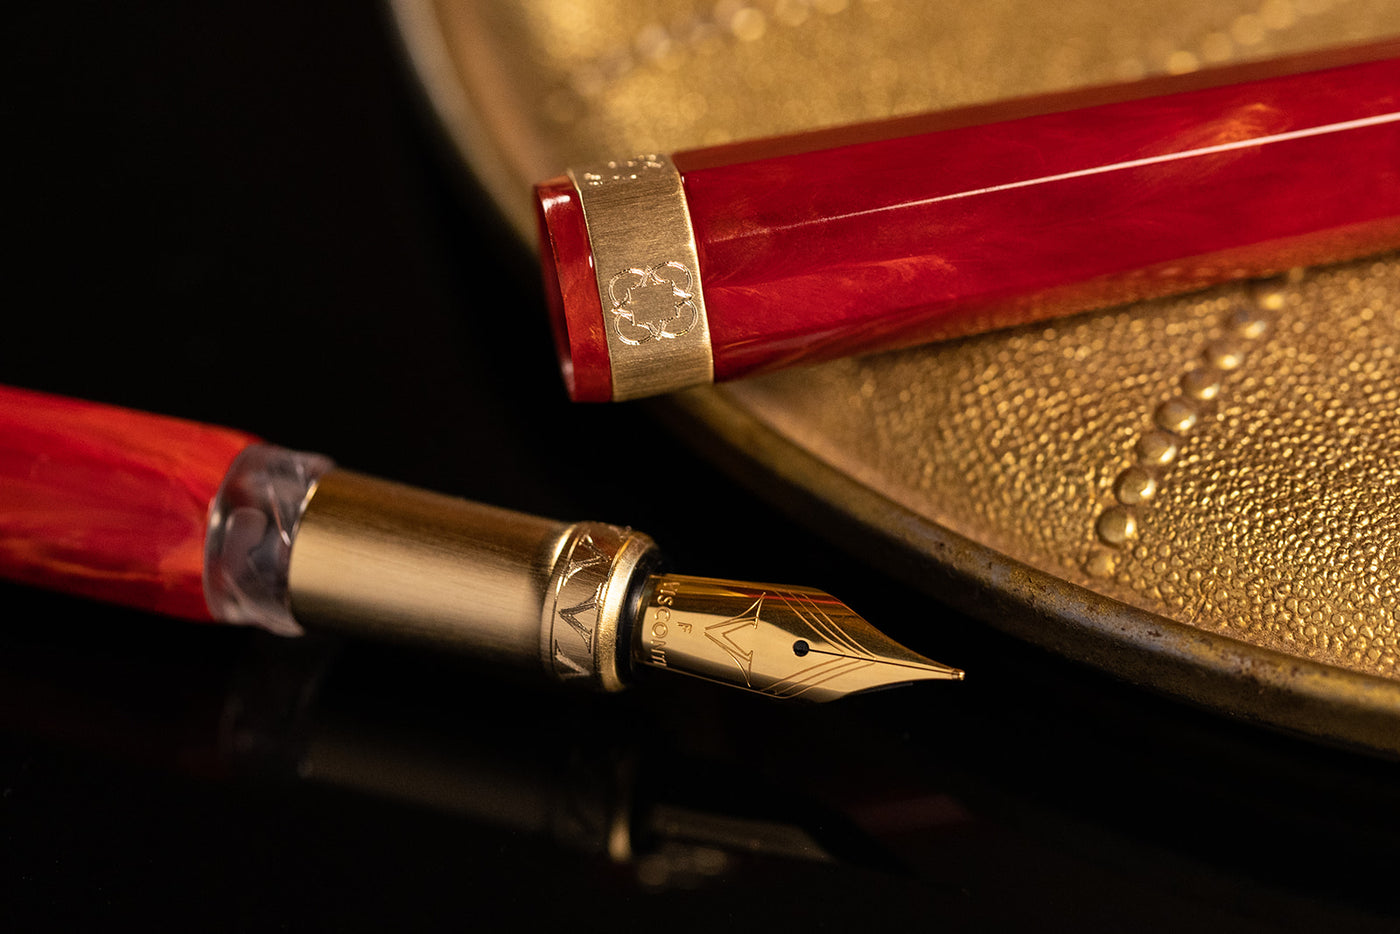 Visconti Opera Gold Fountain Pen - Red